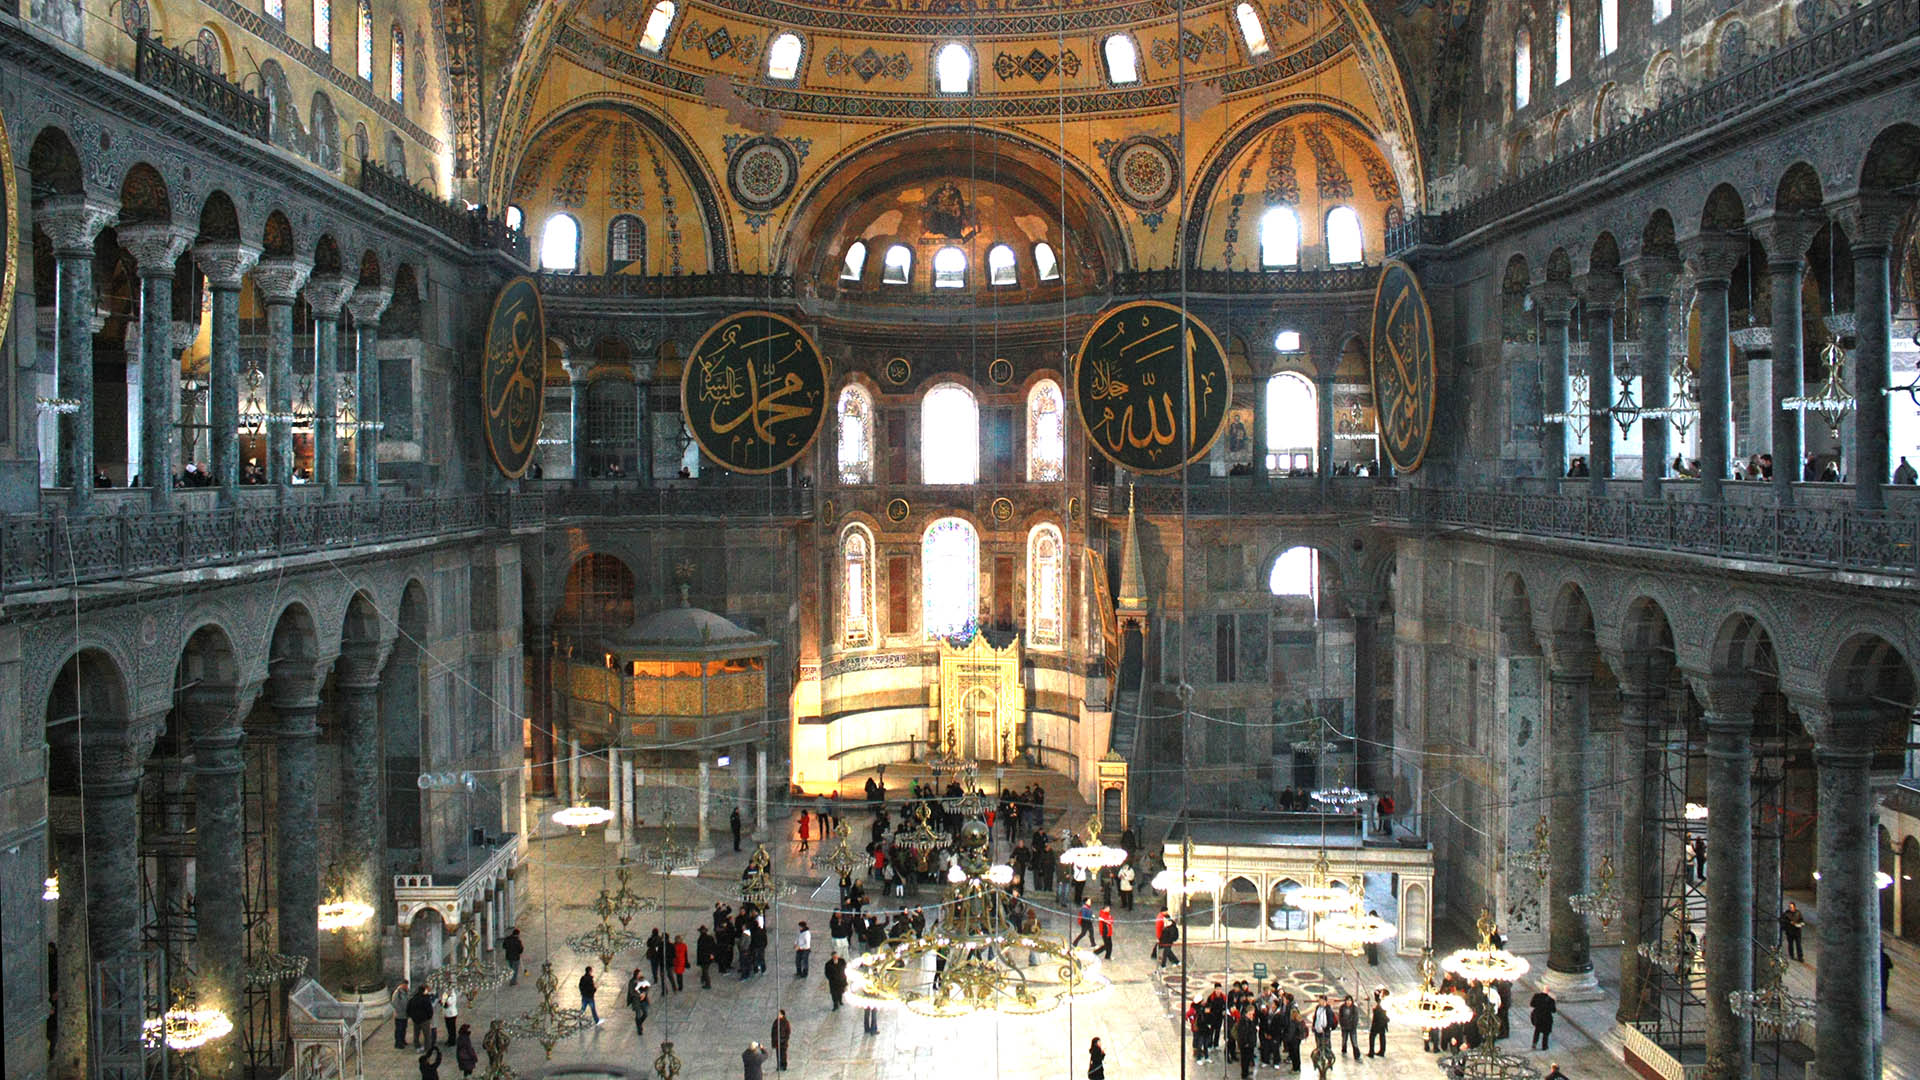 Die Hagia Sophia in Istanbul war für fast tausend Jahre eine Kirche, dann eine Moschee. Heute ist das Gebäude ein Museum, soll nun nach dem Wunsch einiger Türken wieder Moschee werden.